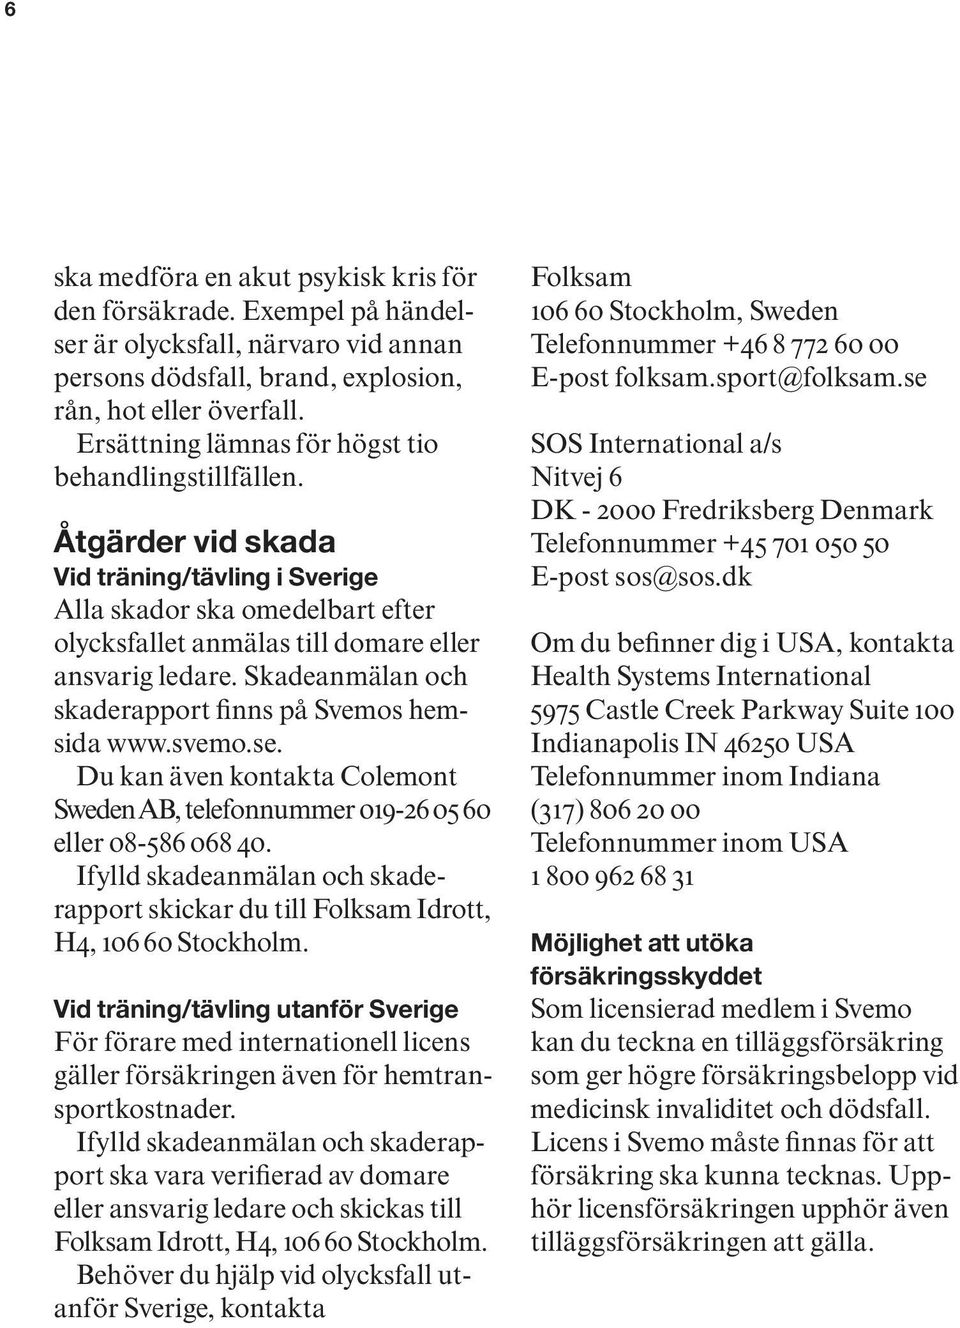 Skadeanmälan och skaderapport finns på Svemos hemsida www.svemo.se. Du kan även kontakta Colemont Sweden AB, telefonnummer 019-26 05 60 eller 08-586 068 40.